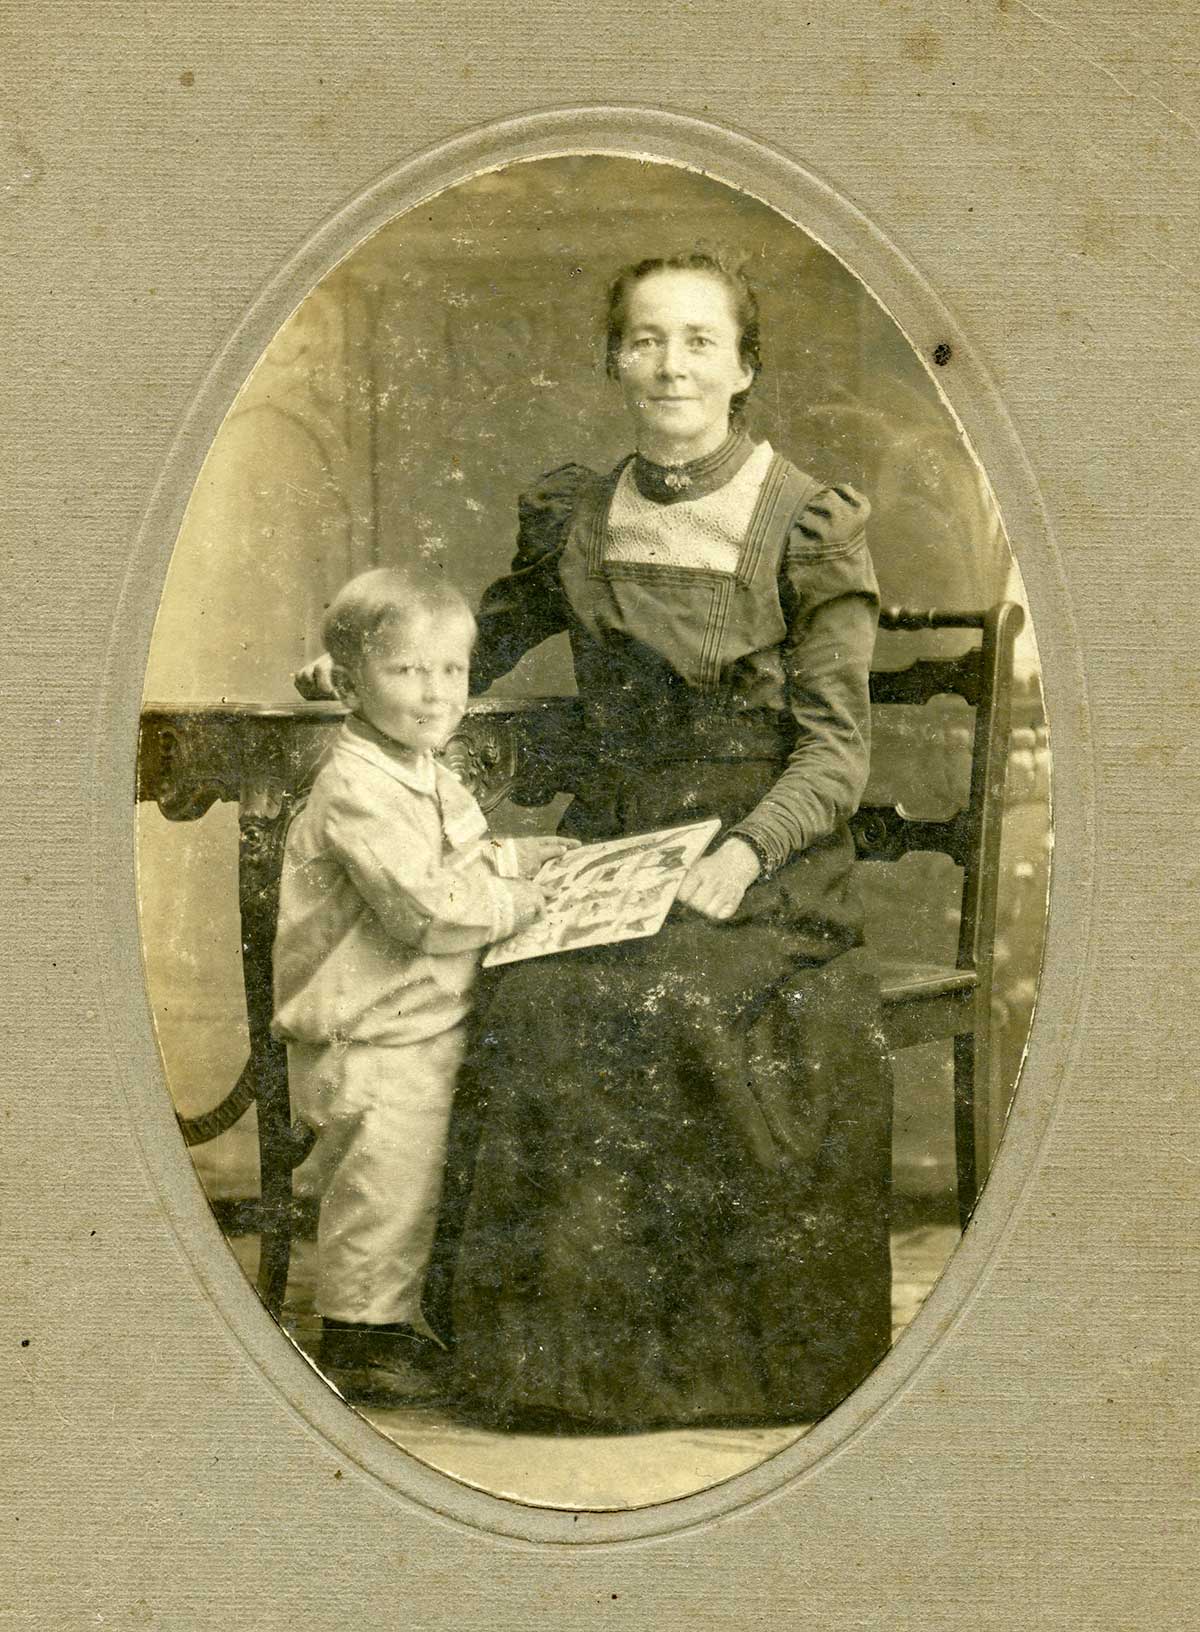 صورة قديمة لأم مع ابنها